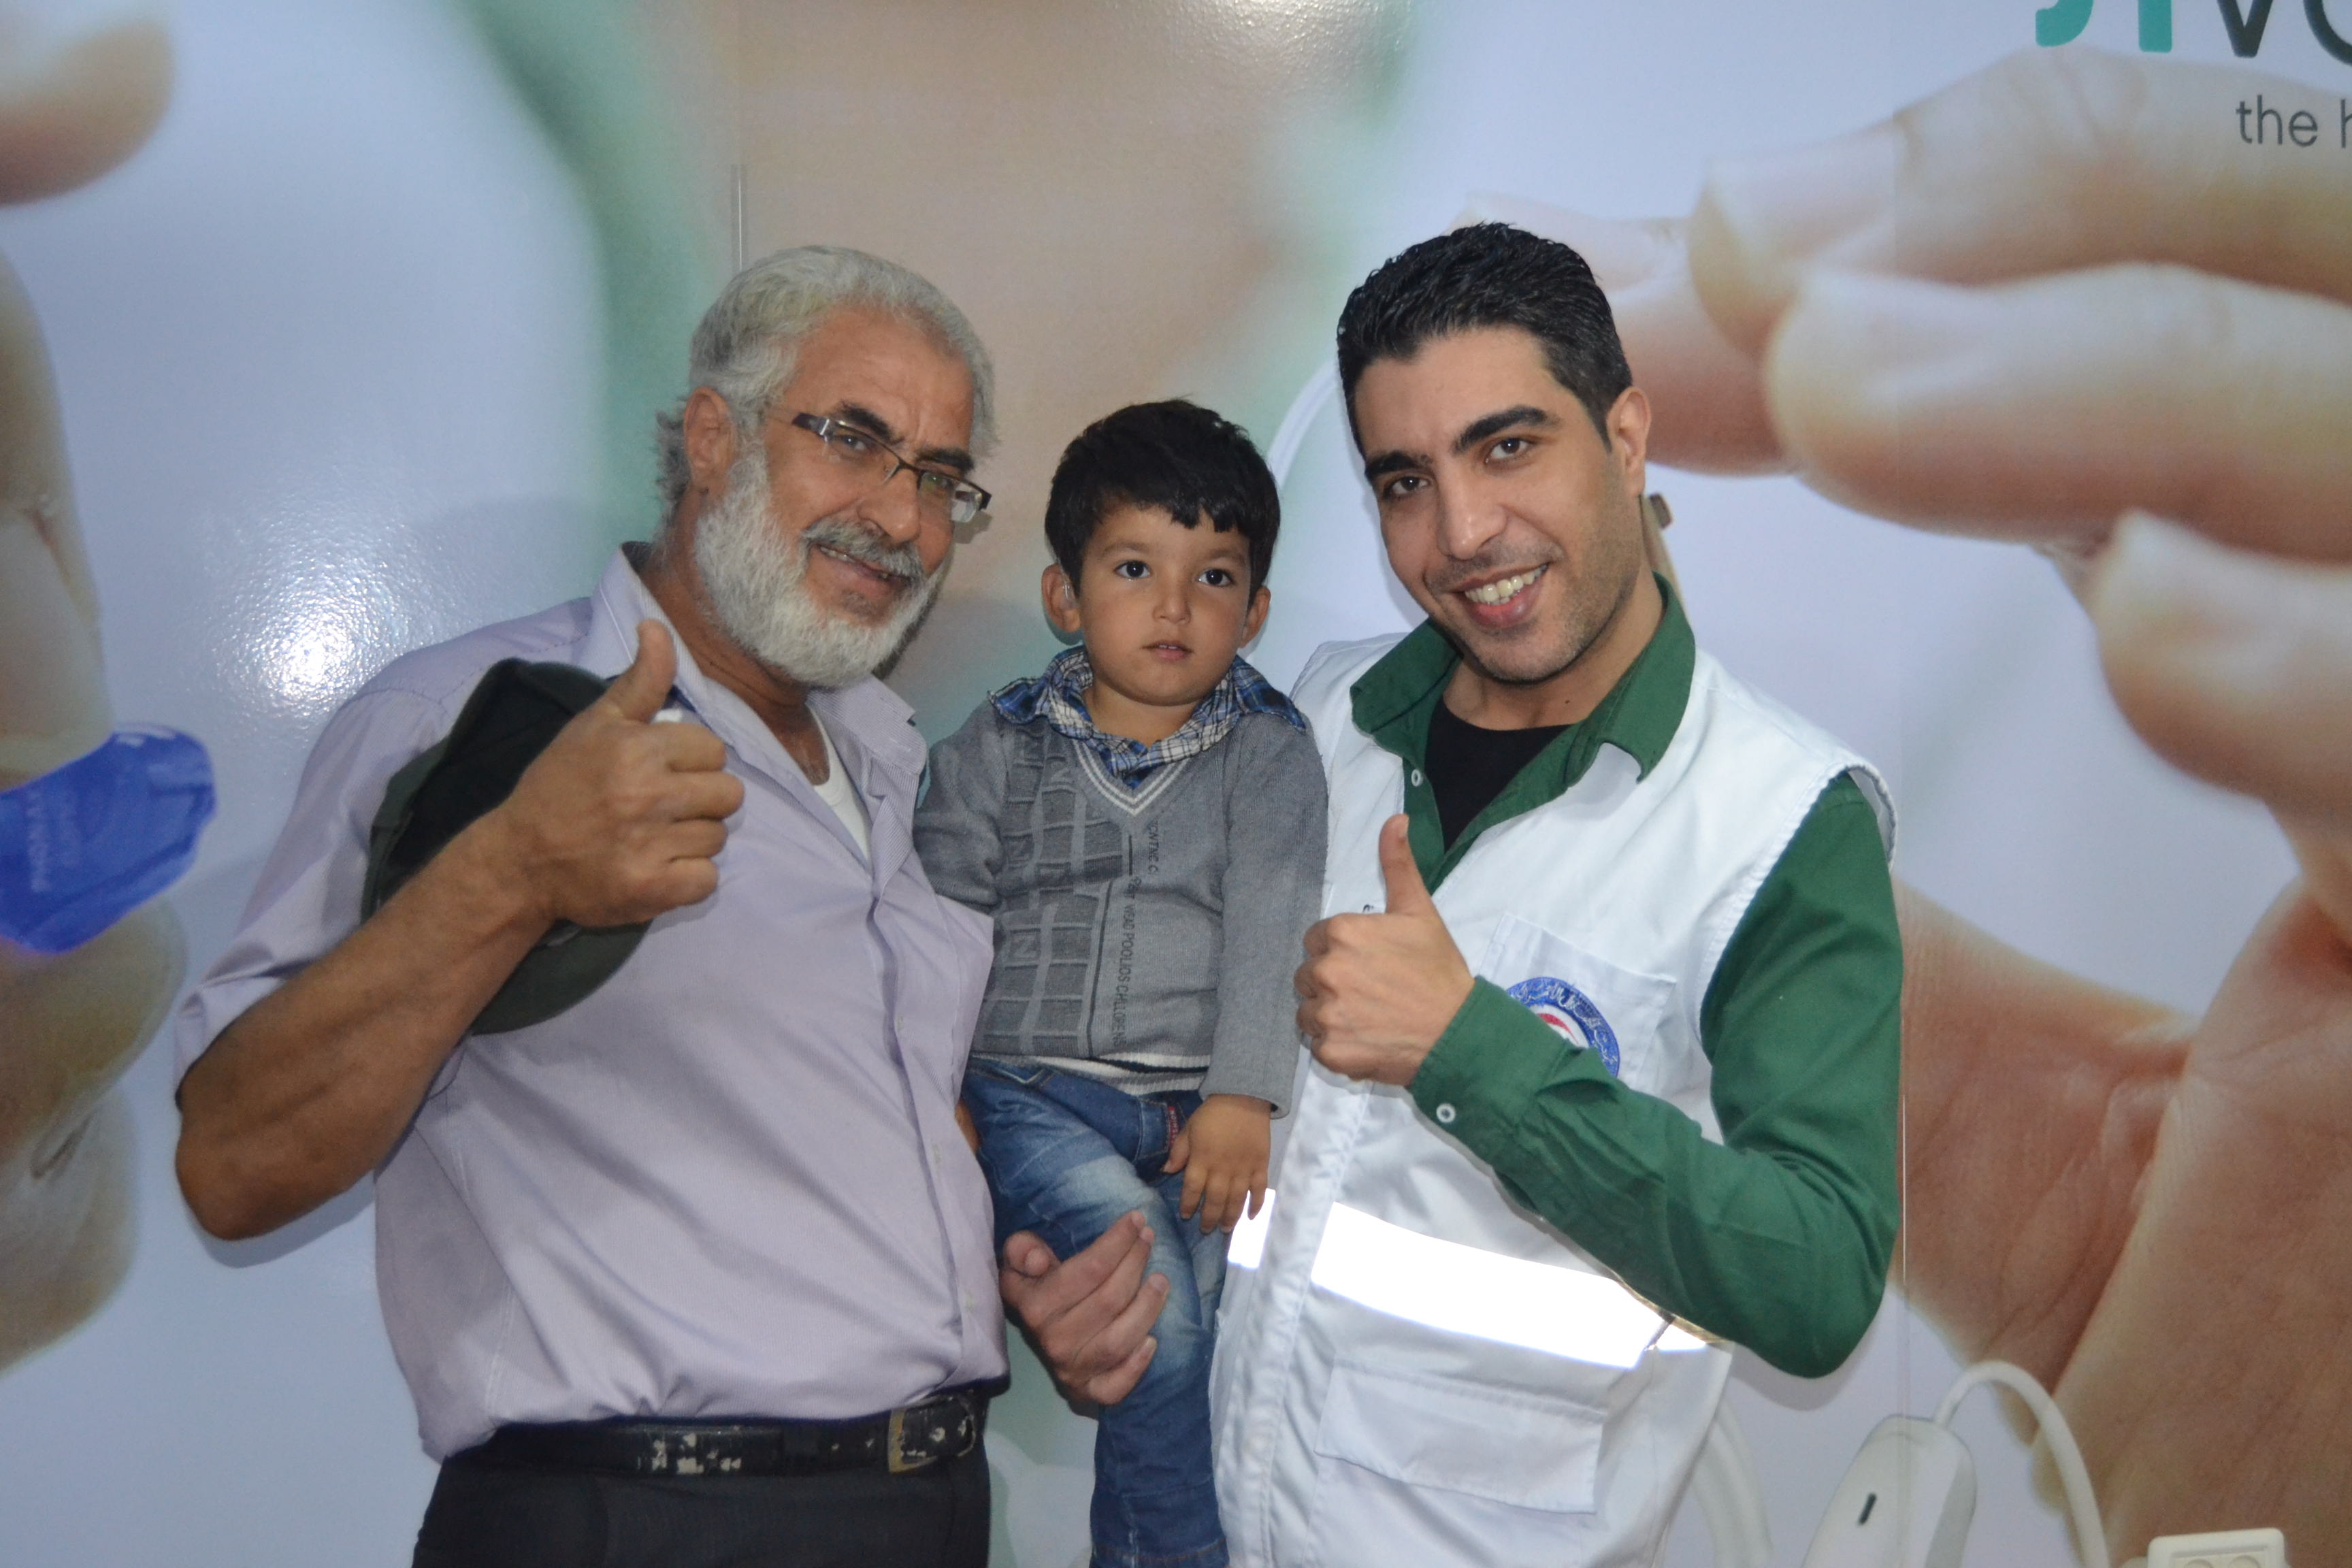 جانب من حملة جمعية الهلال الاحمر لتقديم مساعدات طبية لعشرات الاطفال الفلسطينيين